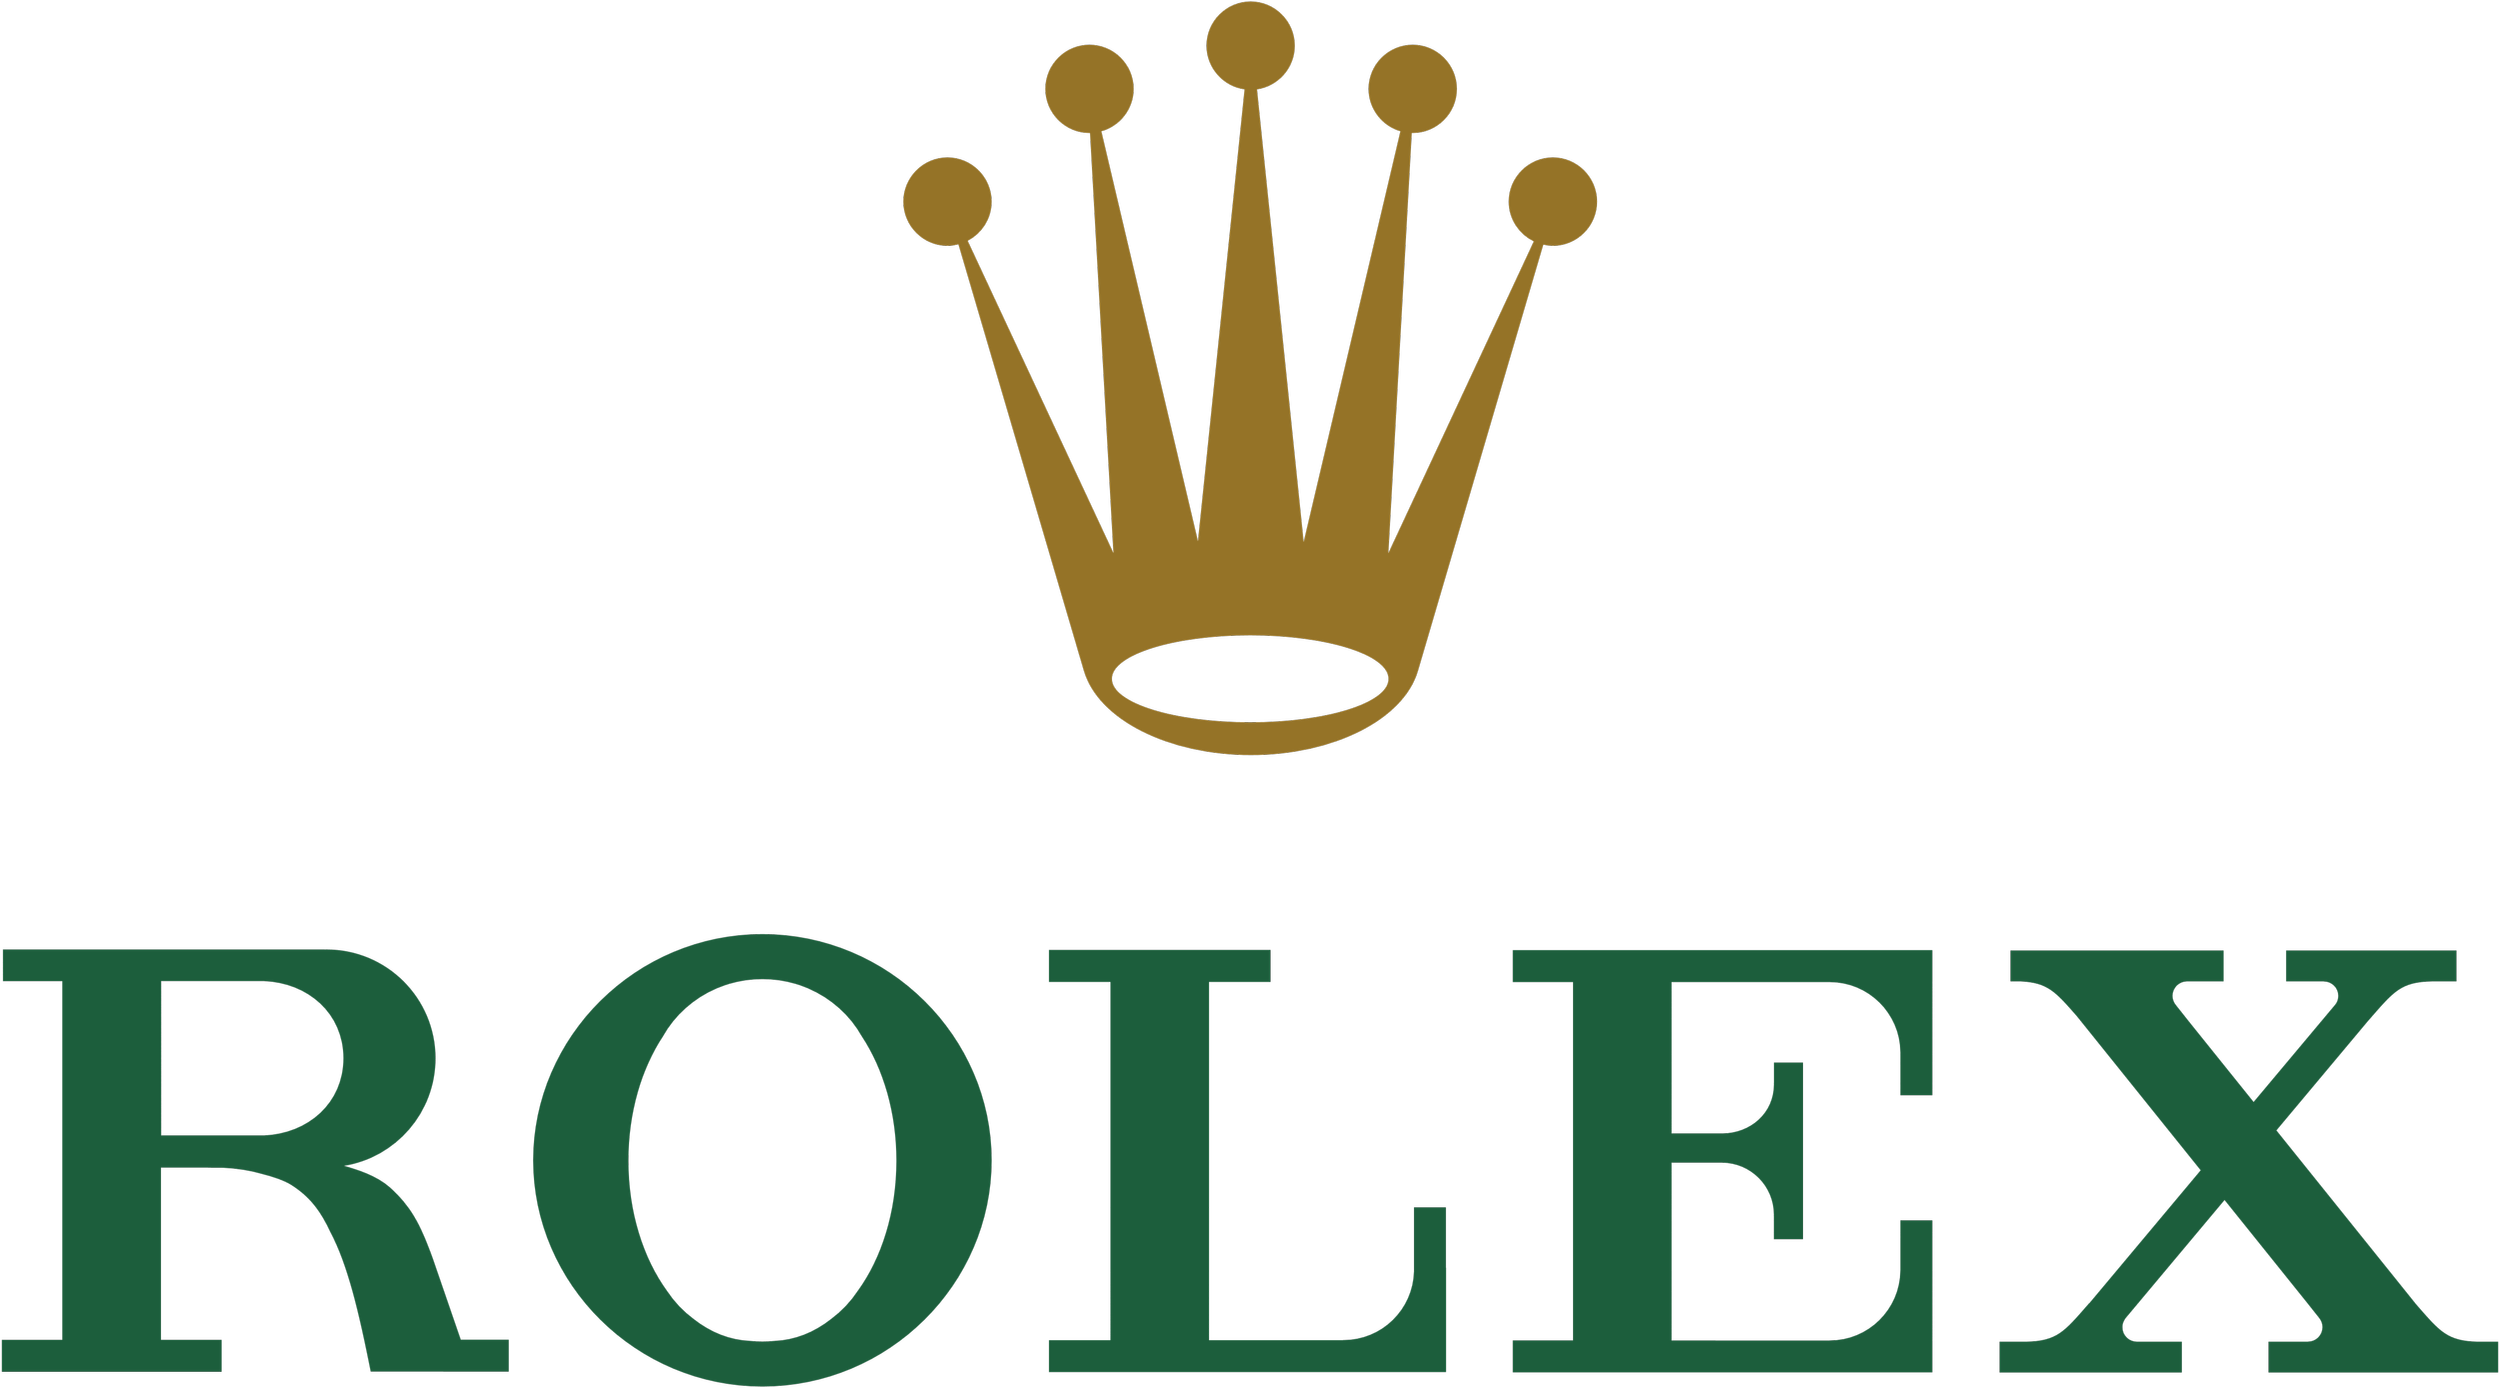 Rolex_logo.png